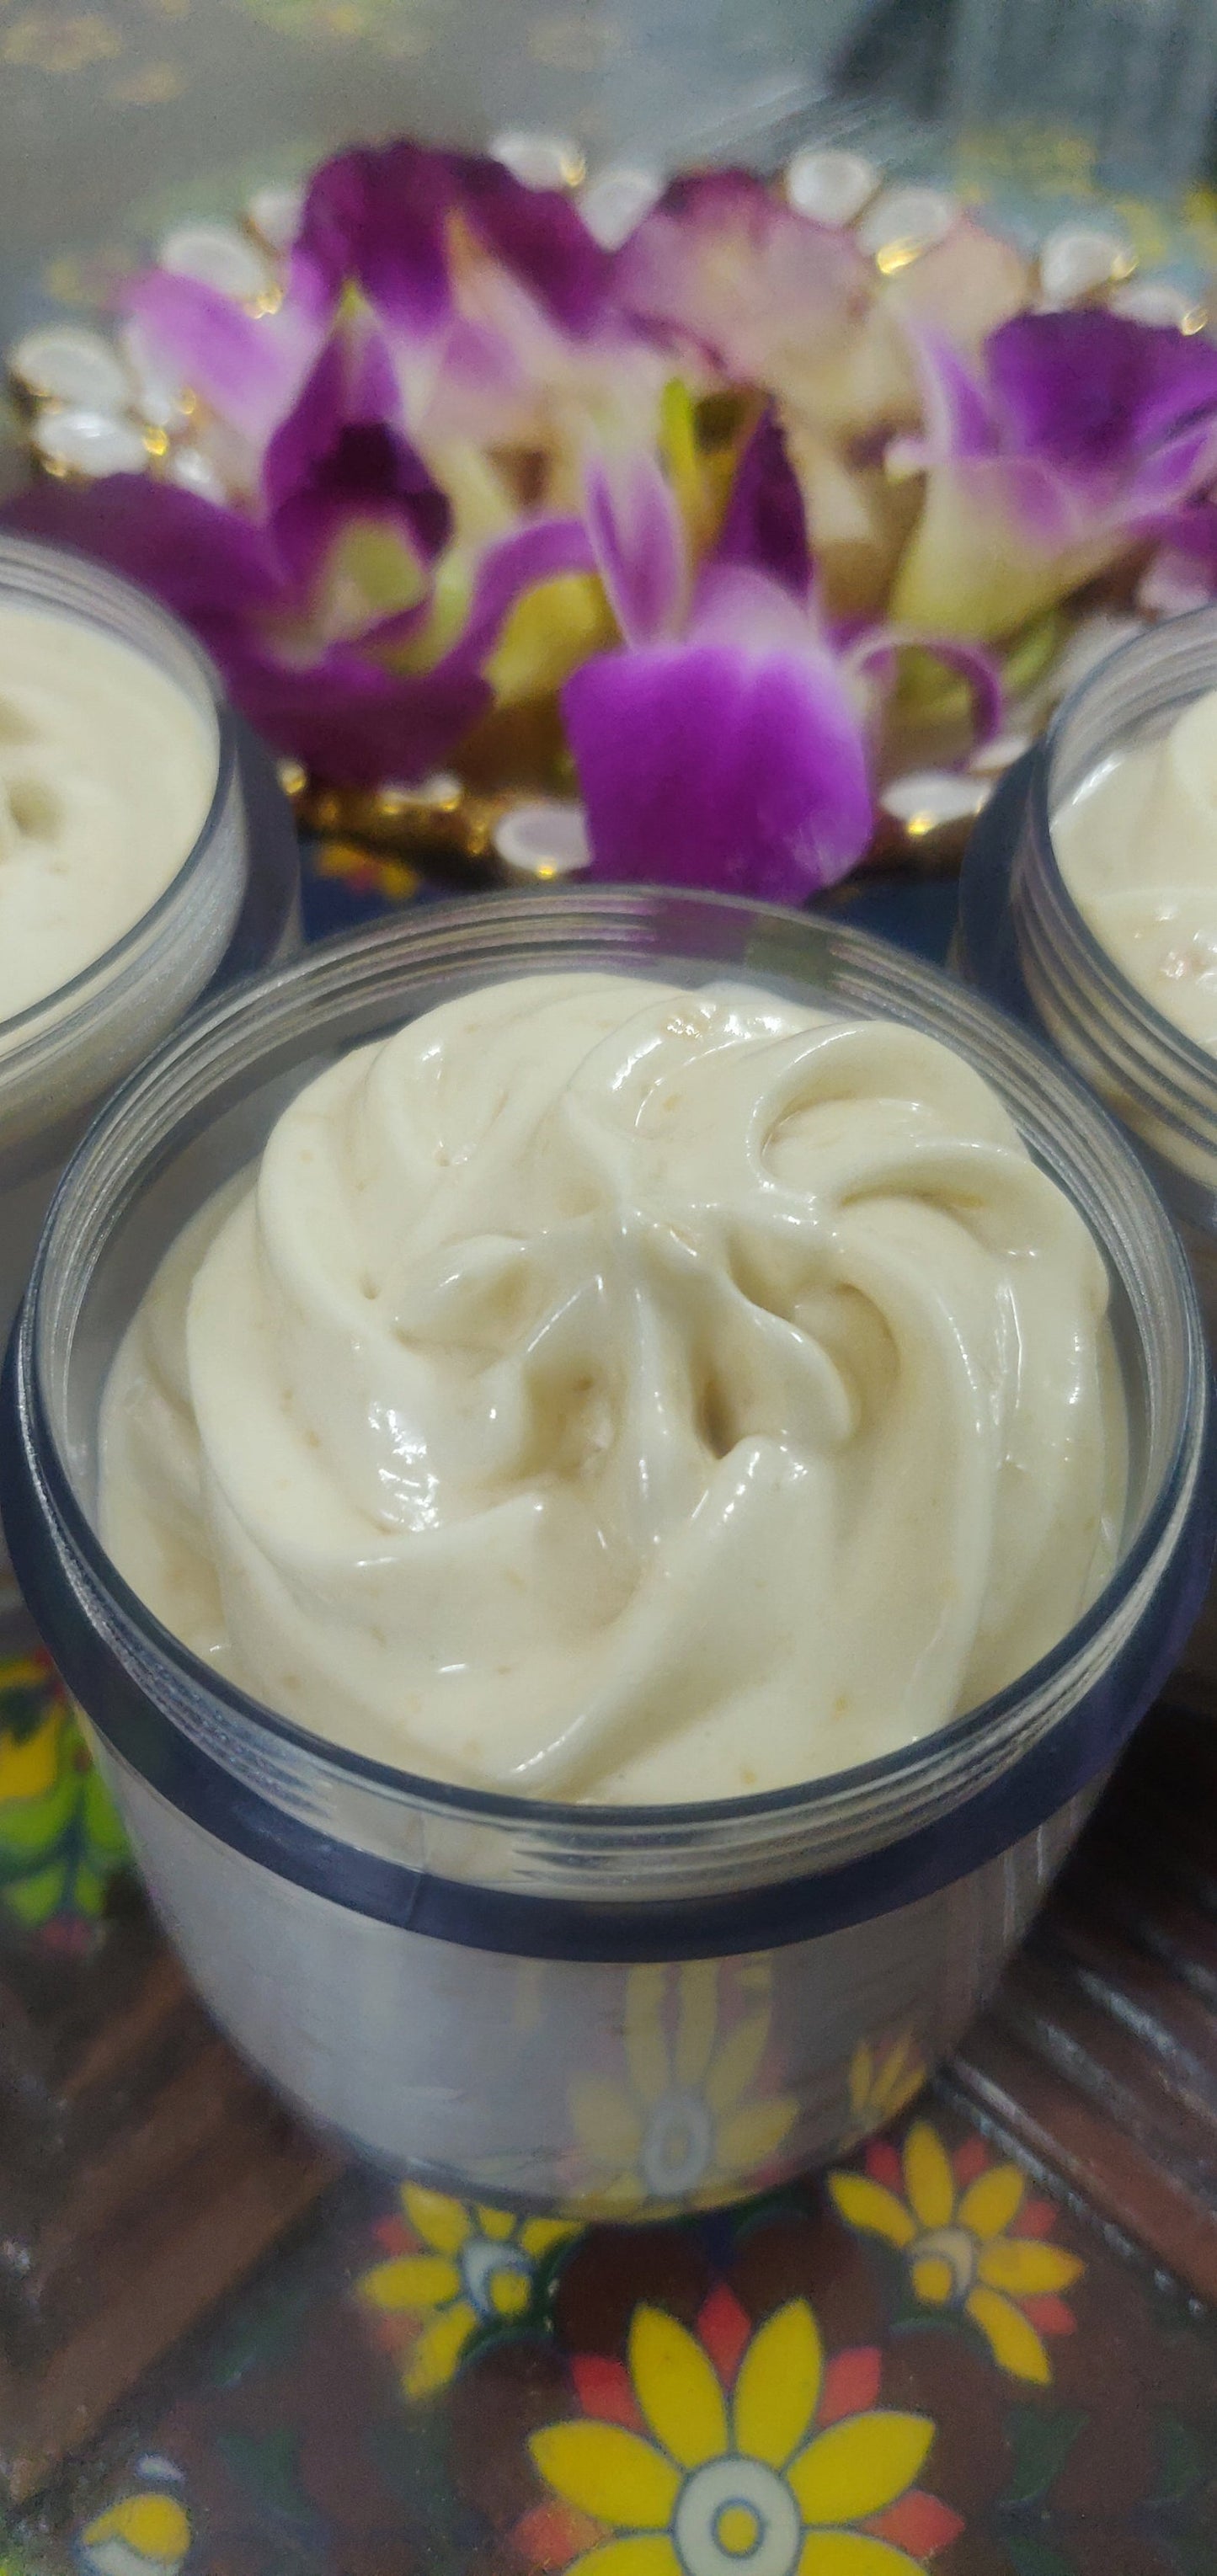 Whipped Body Butter - Truebliss Skincare